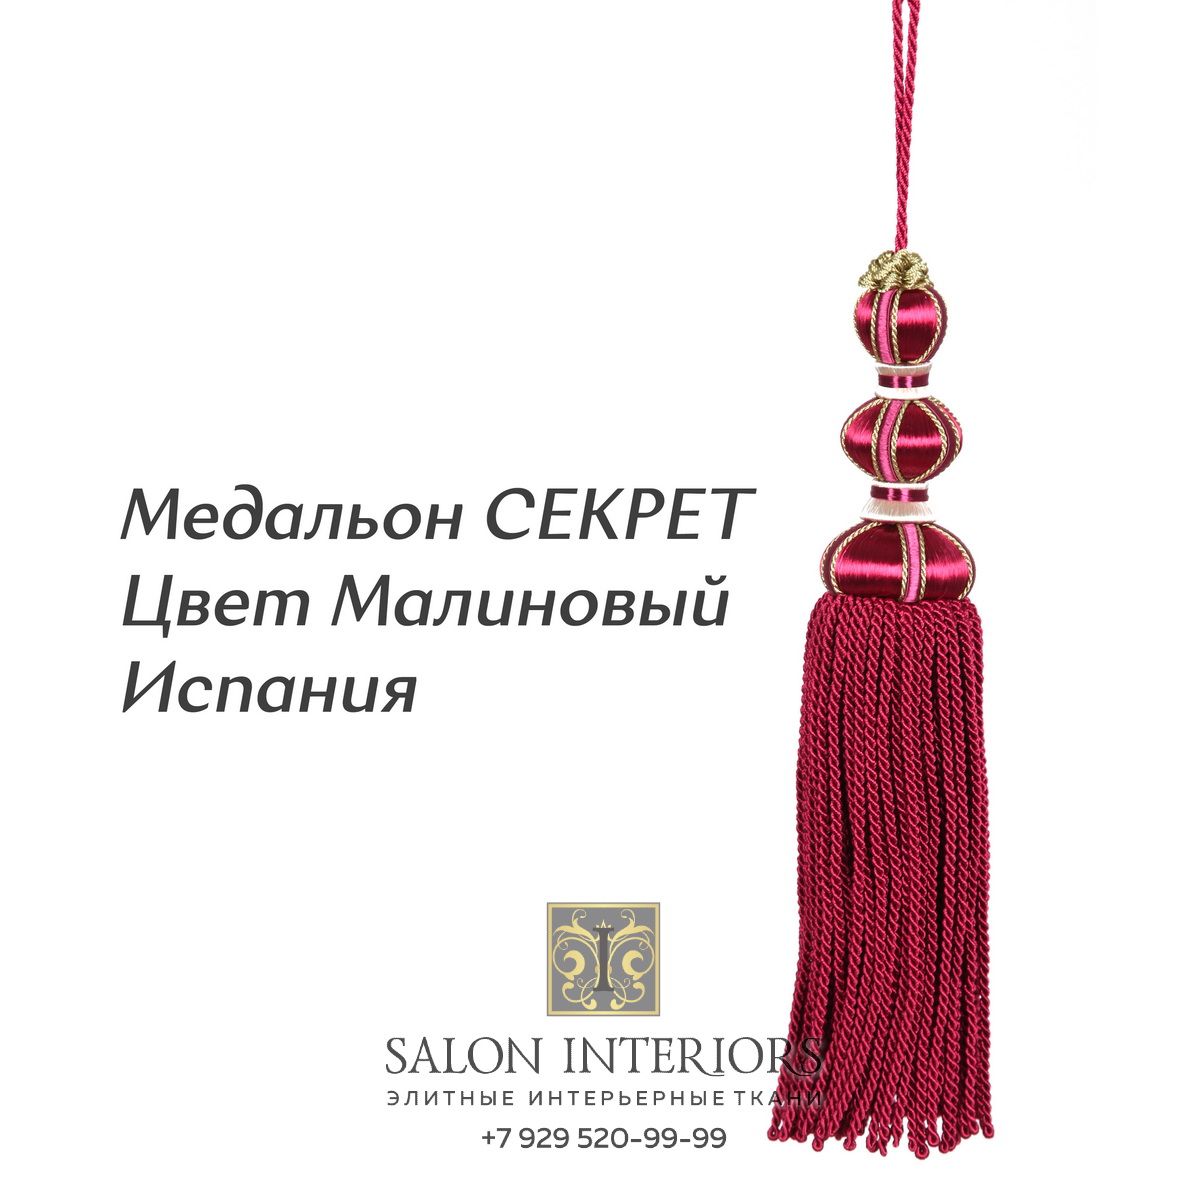 Медальон "СЕКРЕТ" Арт MK996A-1897 Цвет Малиновый разм.27см Испания